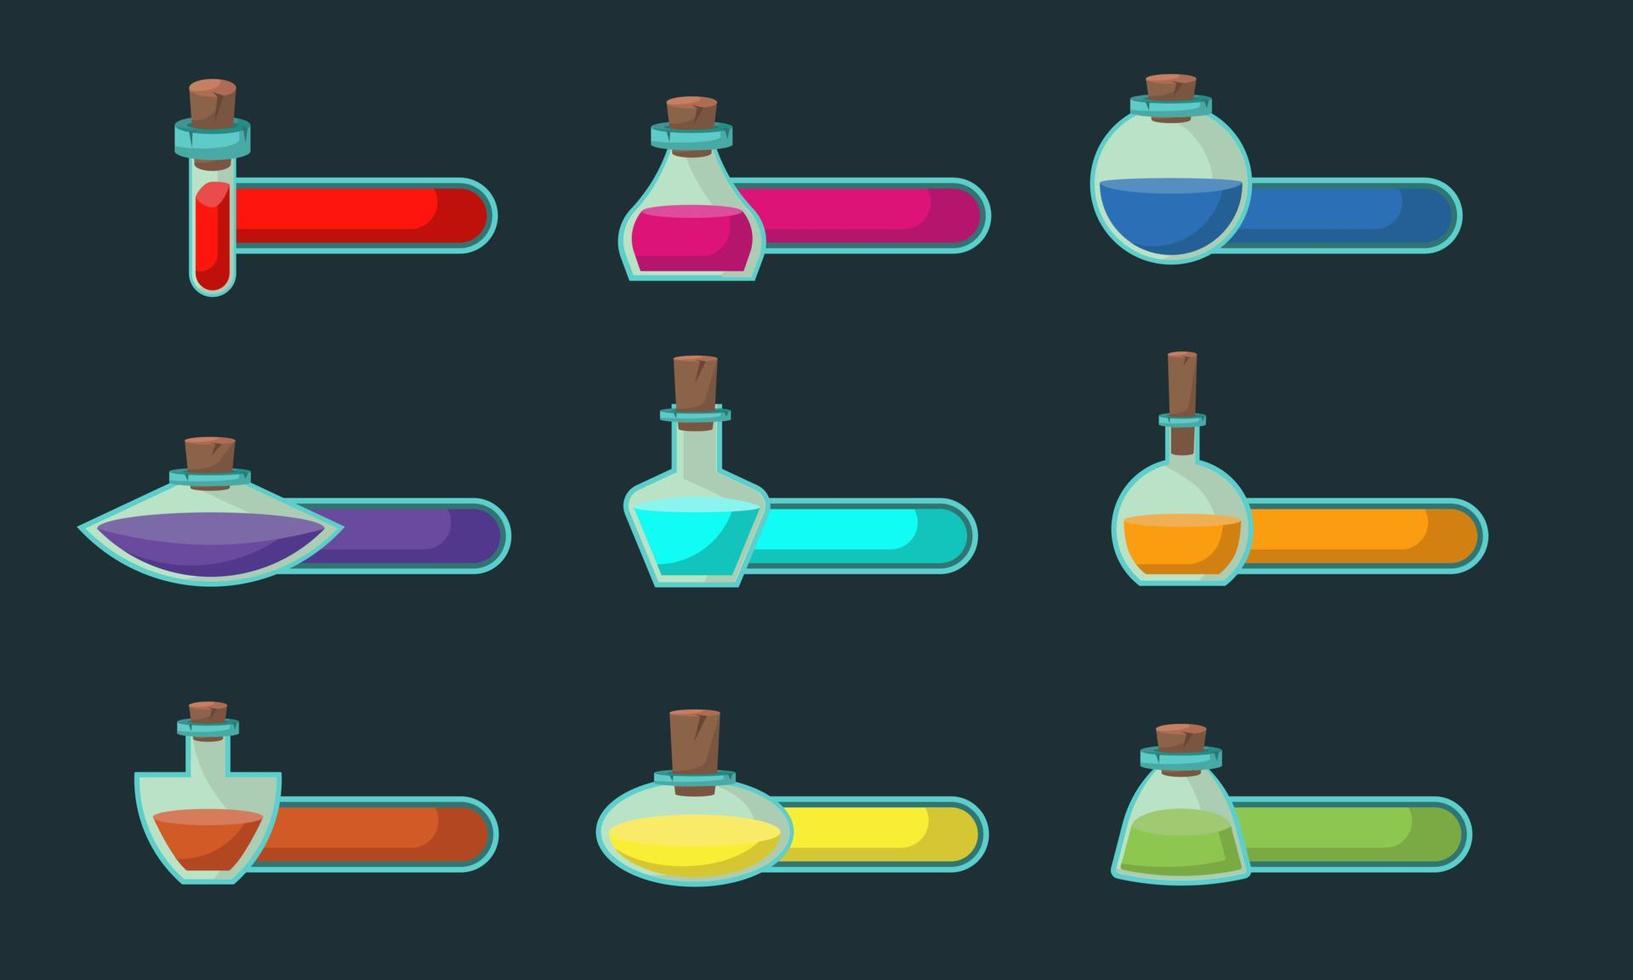 uppsättning spel ikoner av flaskor med förgifta eller elixir och status indikator. gui bar element för spel design och samling av magisk vätskor i glas flaskor. vektor illustration för mobil video spel